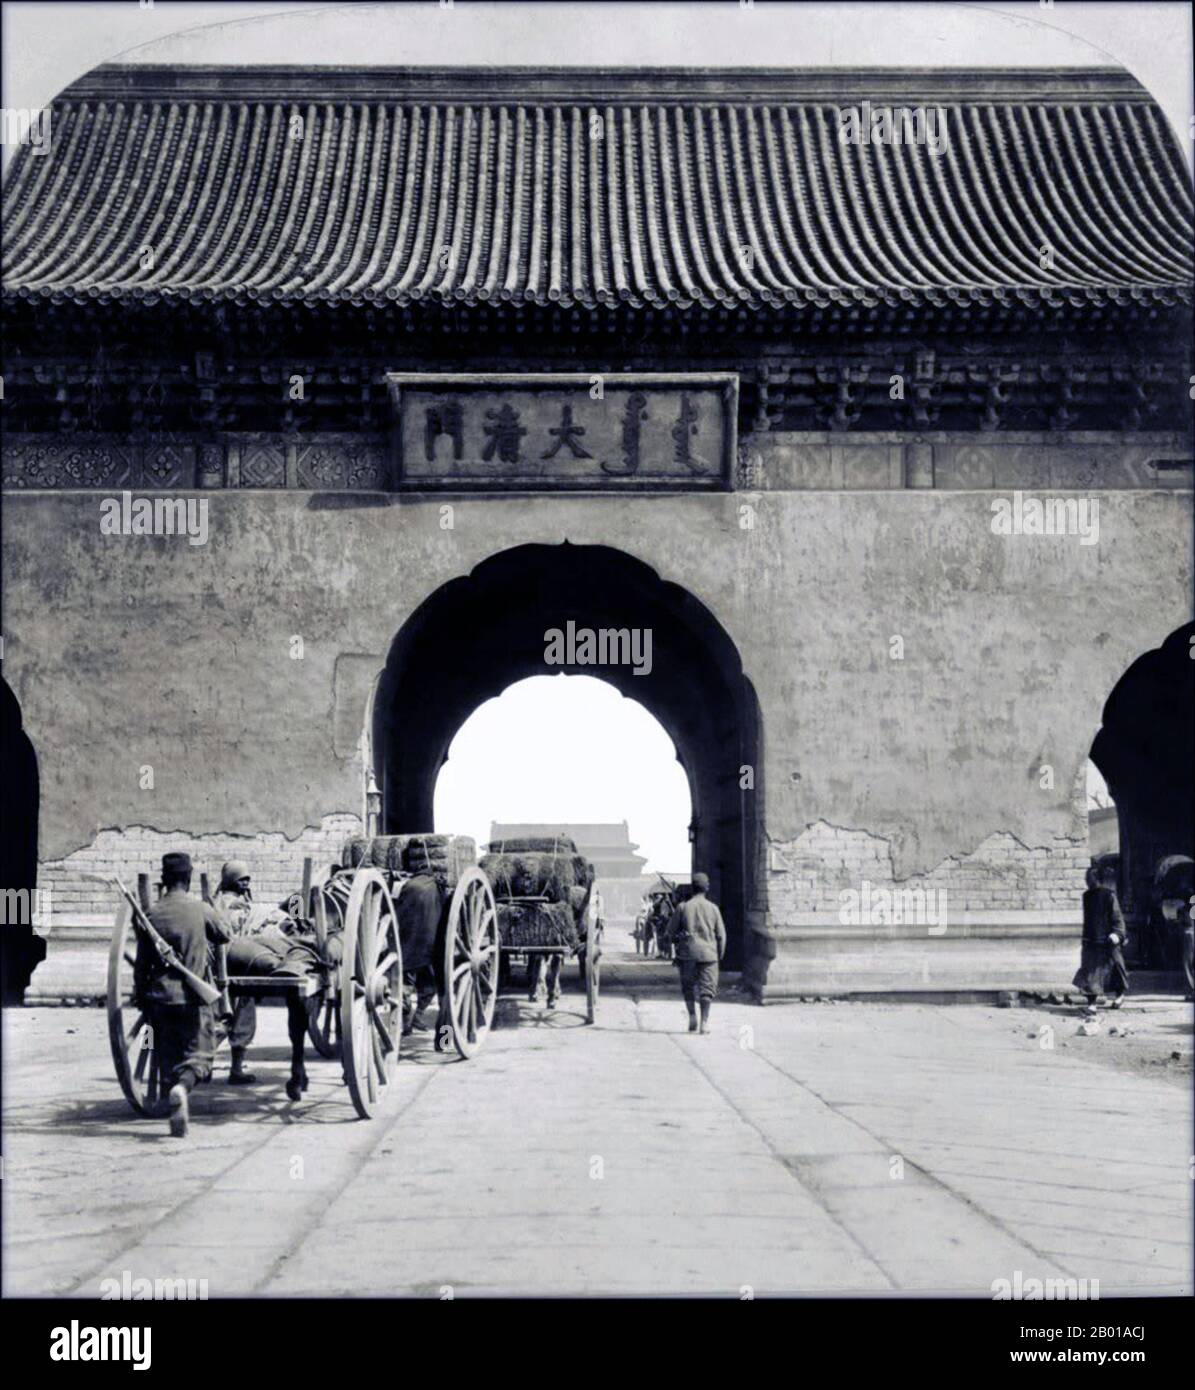 China: Pferdewagen, die durch die Da Qing Men oder das „große Qing-Tor“, auch Kaiserliches Tor genannt, 1901 in die Kaiserstadt von Peking gelangen. Die Kaiserstadt (Chinesisch: Běijīng Huángchéng; Manchu: Dorgi hoton, wörtlich „die Innere Stadt“) ist ein Teil der Stadt Peking in den Ming- und Qing-Dynastien, mit der Verbotenen Stadt im Zentrum. Es bezieht sich auf die Sammlung von Gärten, Schreinen und anderen Servicebereichen zwischen der Verbotenen Stadt und der Inneren Stadt des alten Peking. Die Kaiserstadt war von einer Mauer umgeben und durch sechs Tore zugänglich. Stockfoto